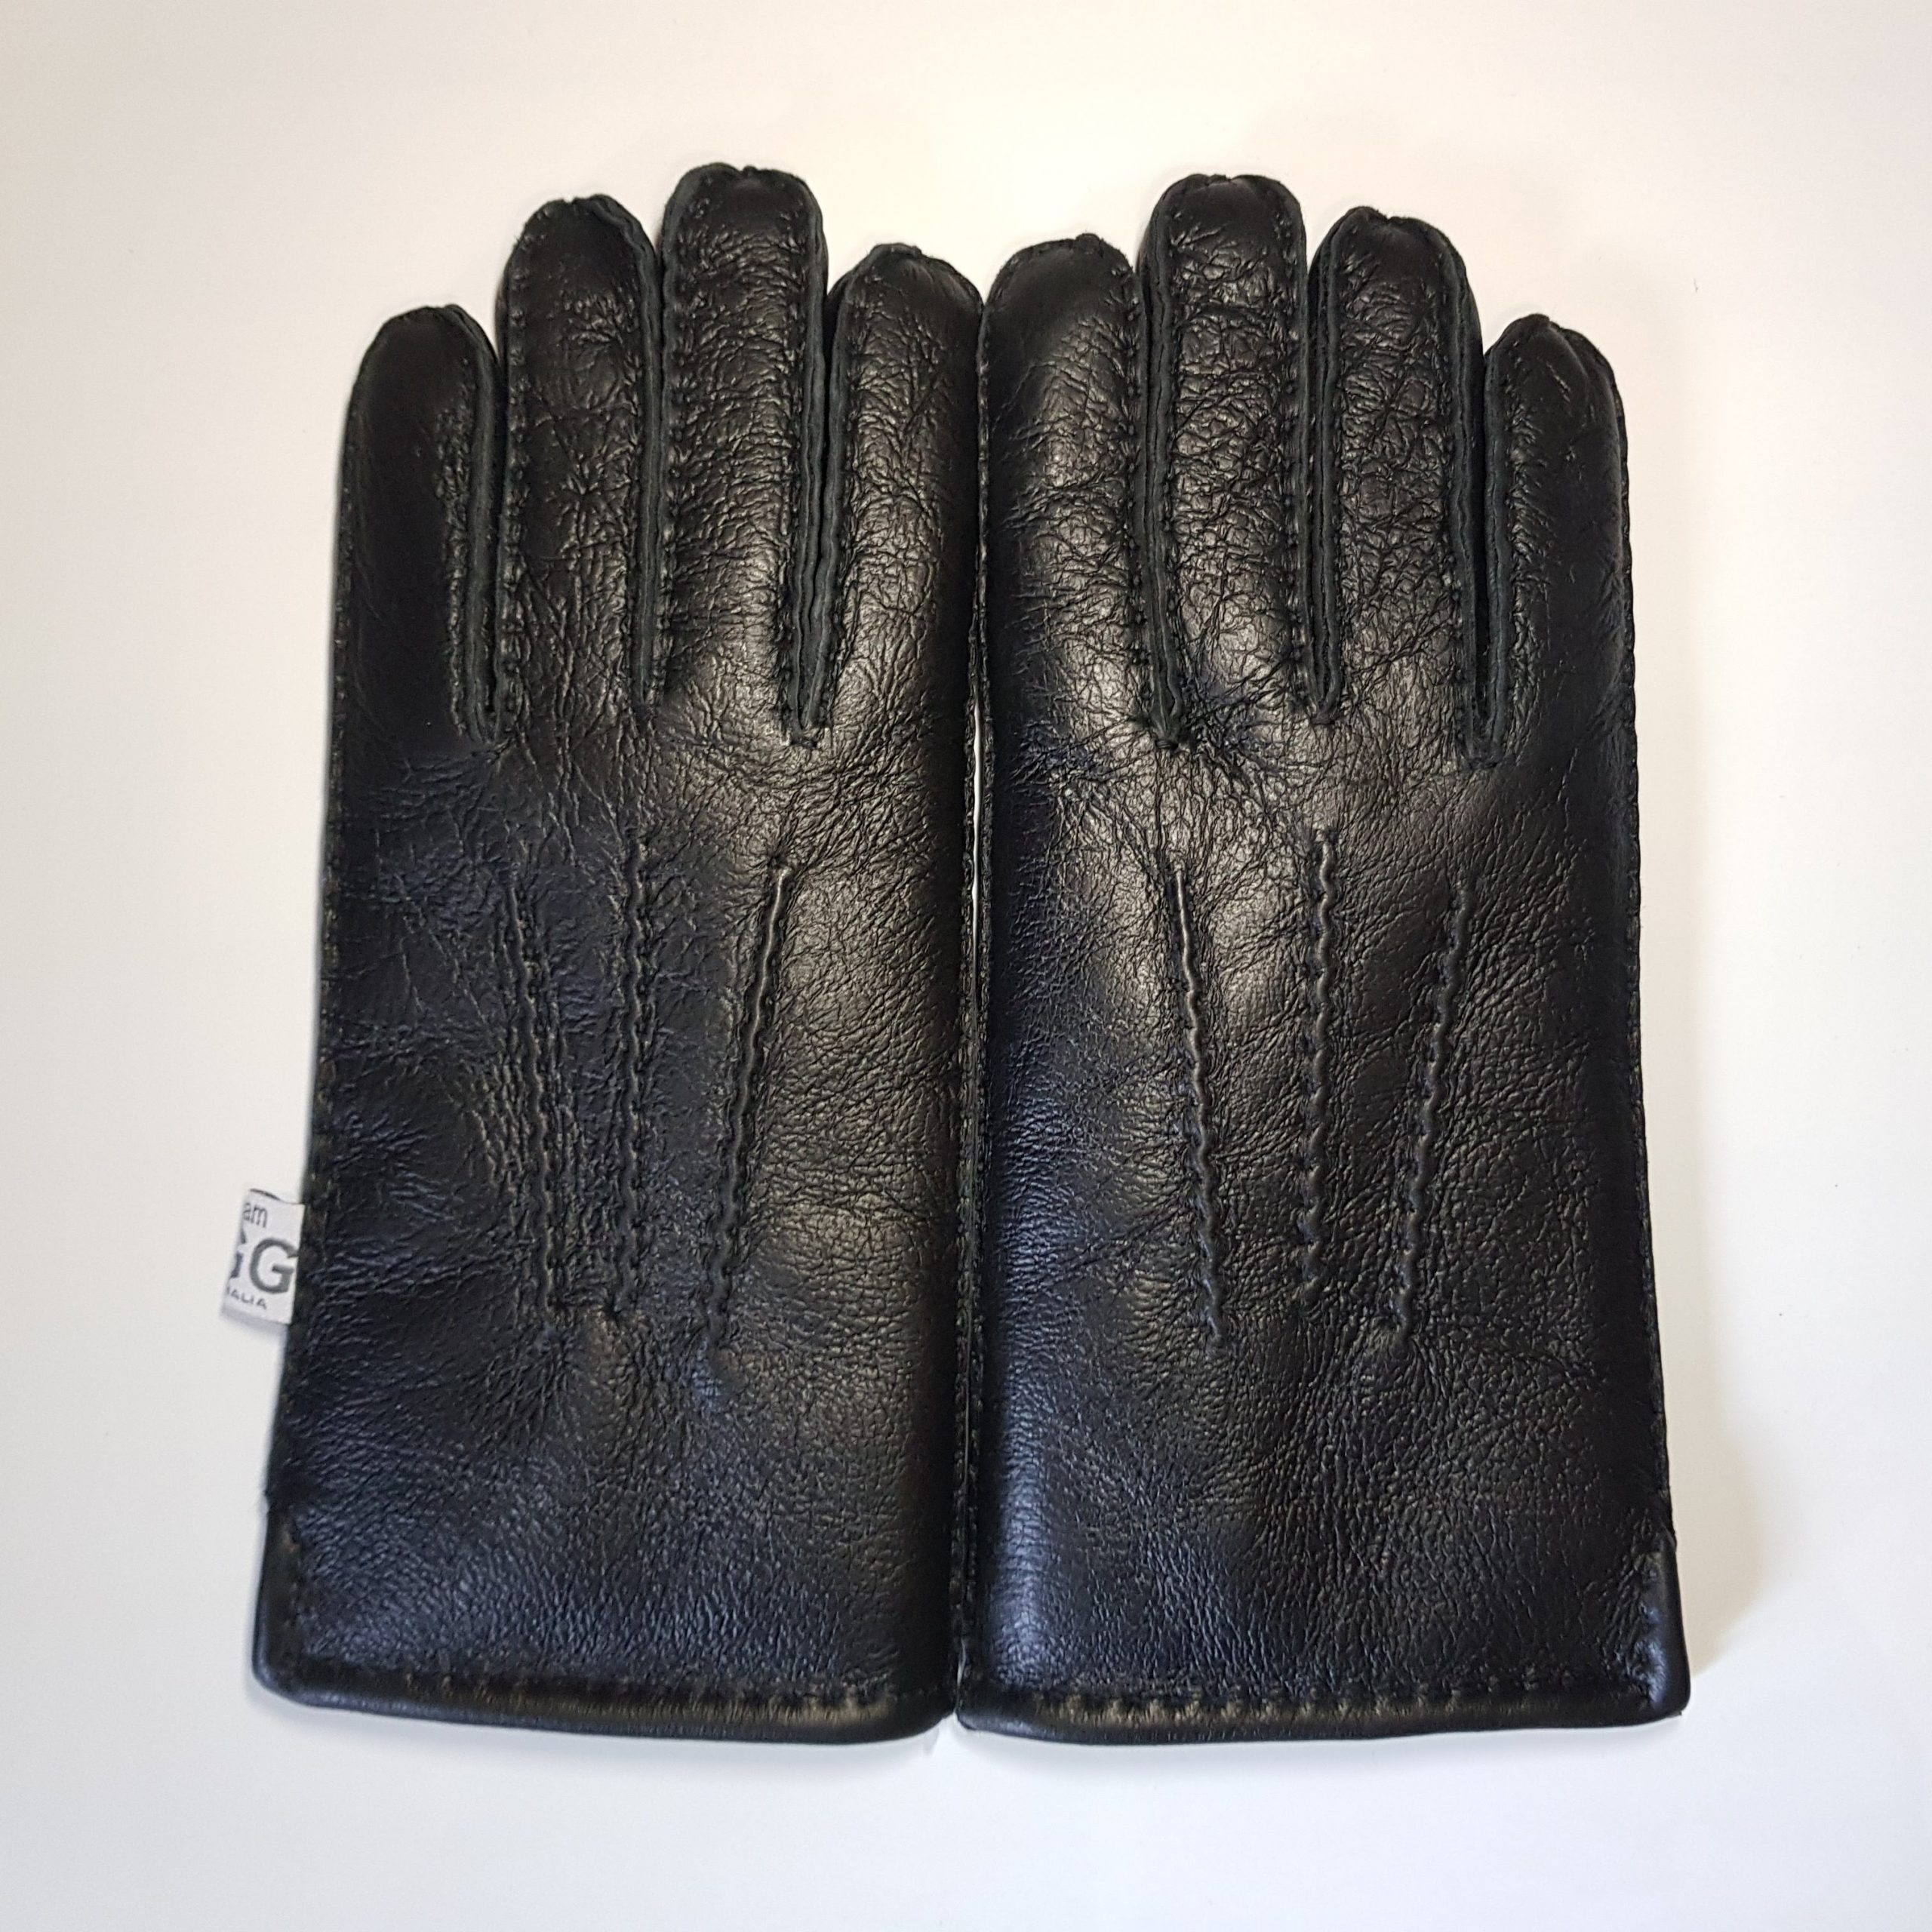 Sheepskin Gloves | Australia Sheepskins and Souvenirs